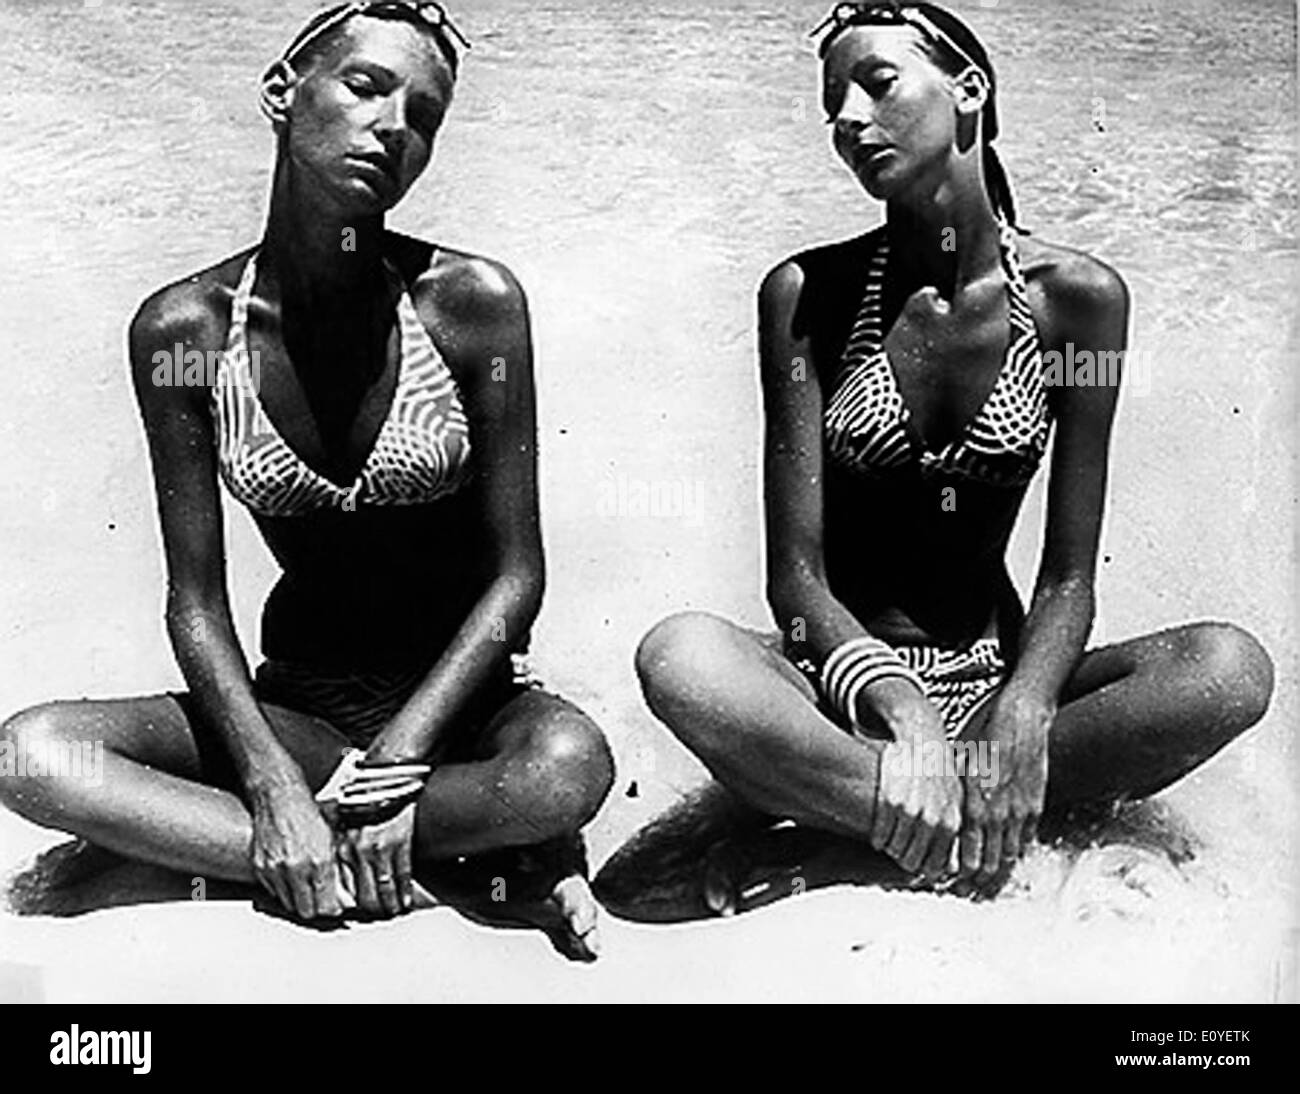 01 janv., 1970 - Londres, Angleterre, Royaume-Uni - Photo : 1960 des années 70. Jeunes filles posant en bikini dans des défilés de mode, les pousses et sur les plages de bronzage. Selon la version officielle, le bikini moderne a été inventé par l'ingénieur français Louis et Rekard Fashion designer Jacques Heim à Paris en 1946 et a présenté le 5 juillet à un défilé à Piscine Molitor à Paris. C'était un bikini avec un g-string dos Banque D'Images